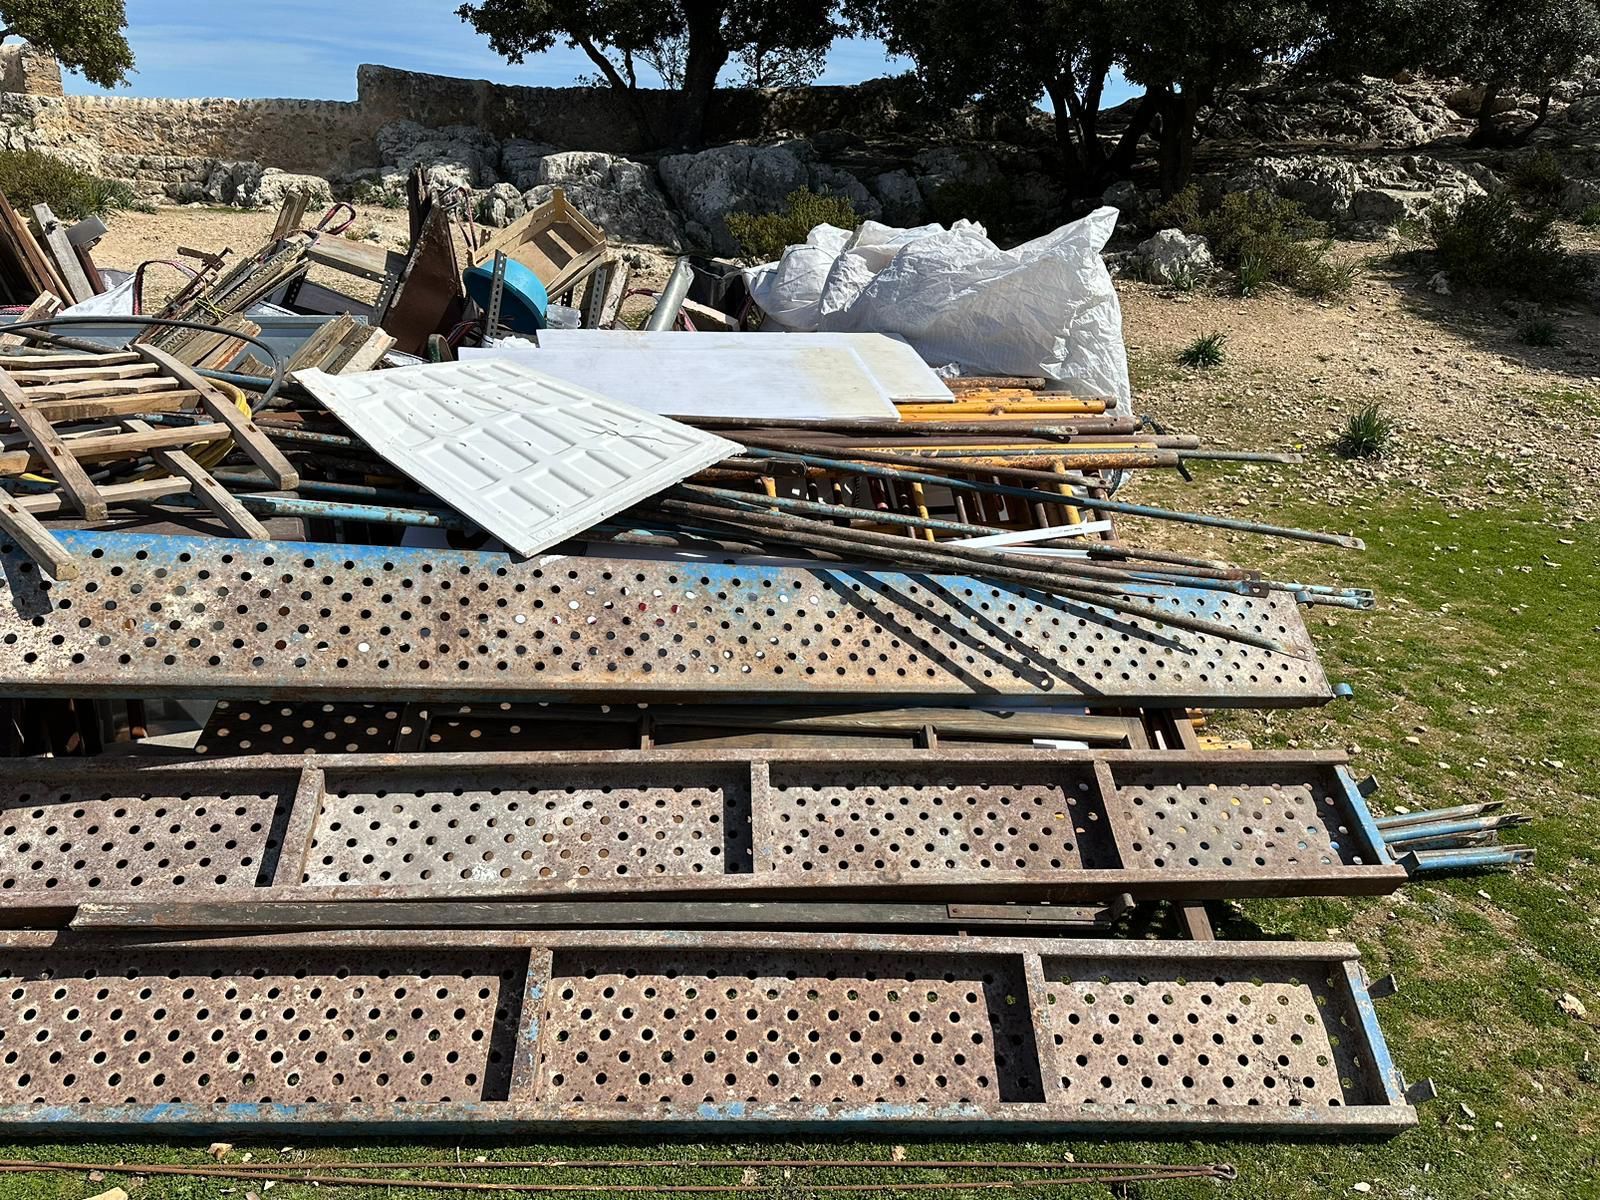 La retirada de residuos del Castell d'Alaró, en imágenes